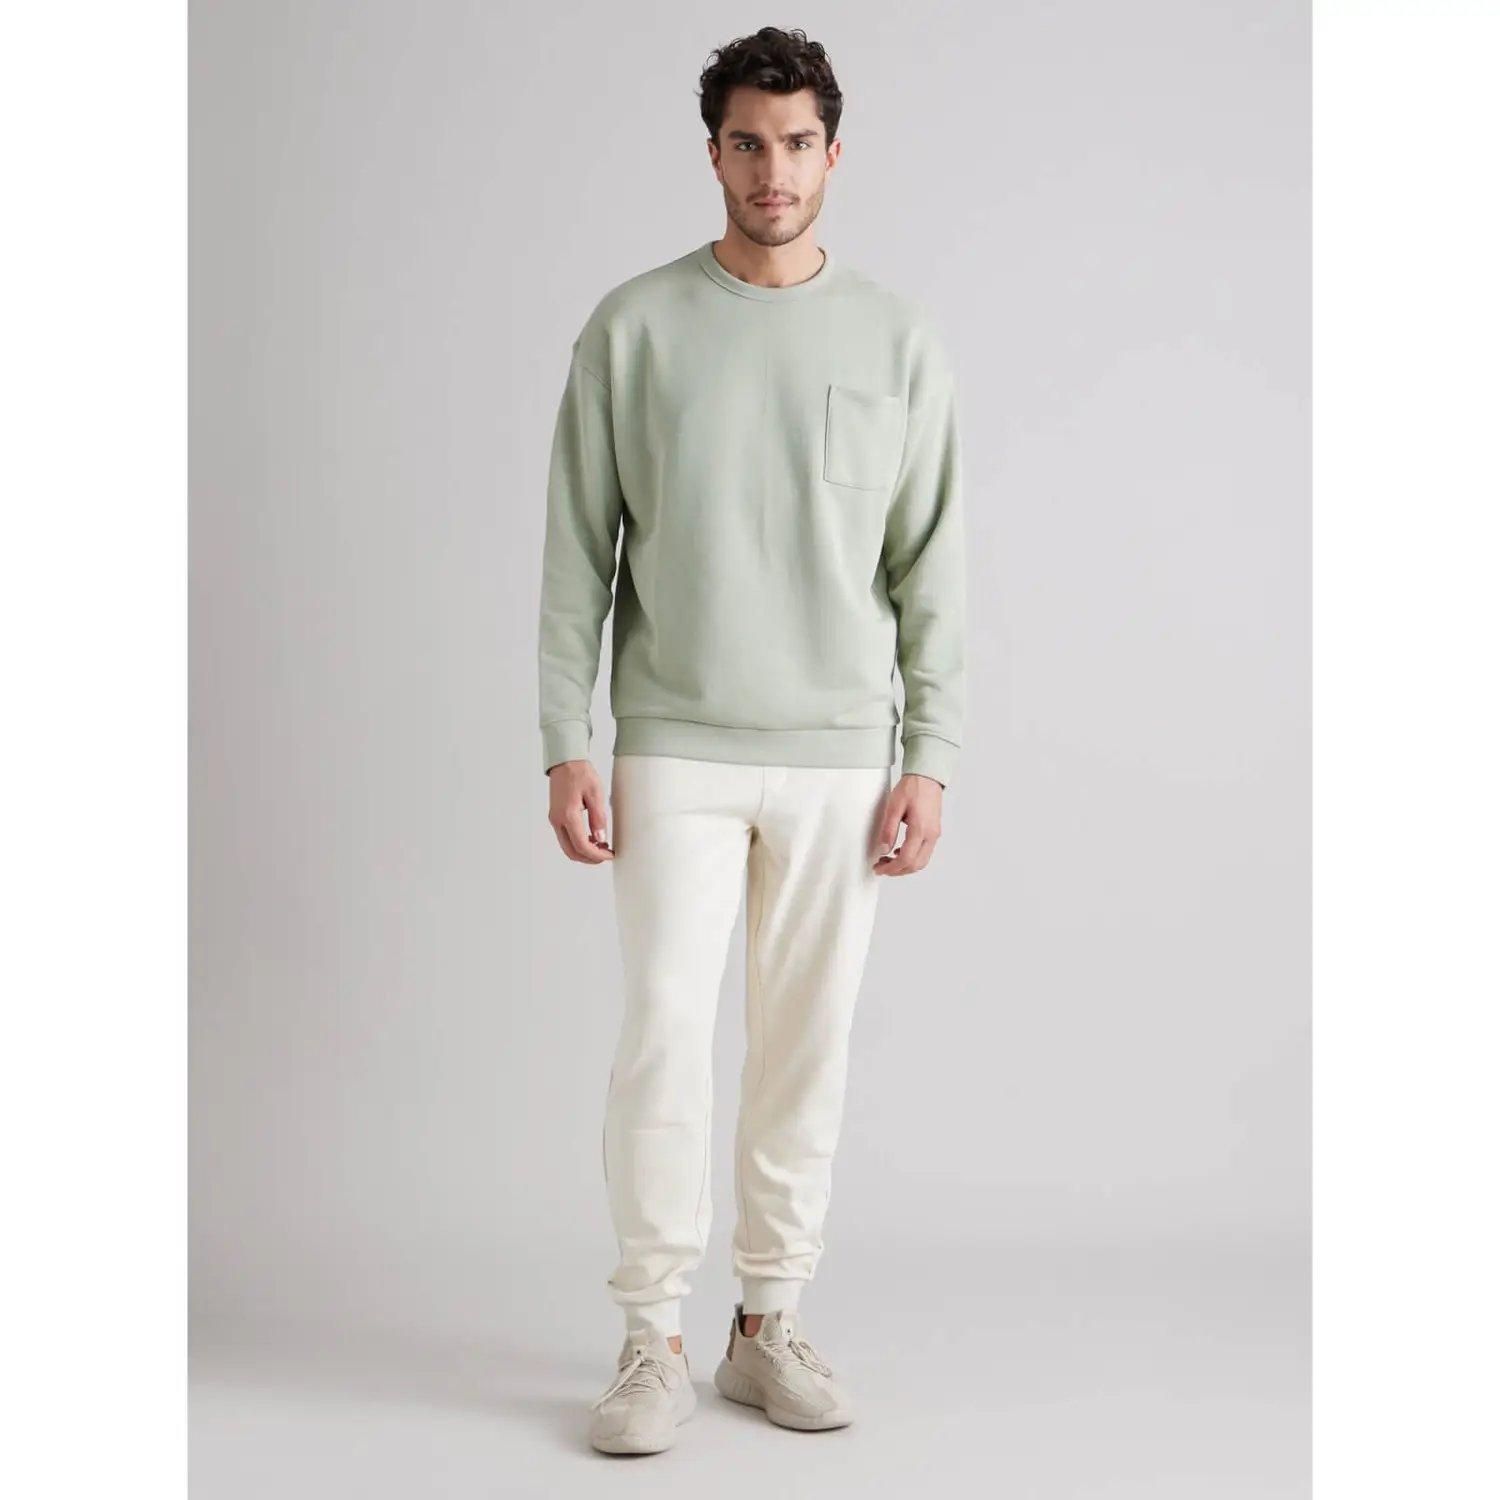 Green Solid Round Neck Cotton Sweatshirt